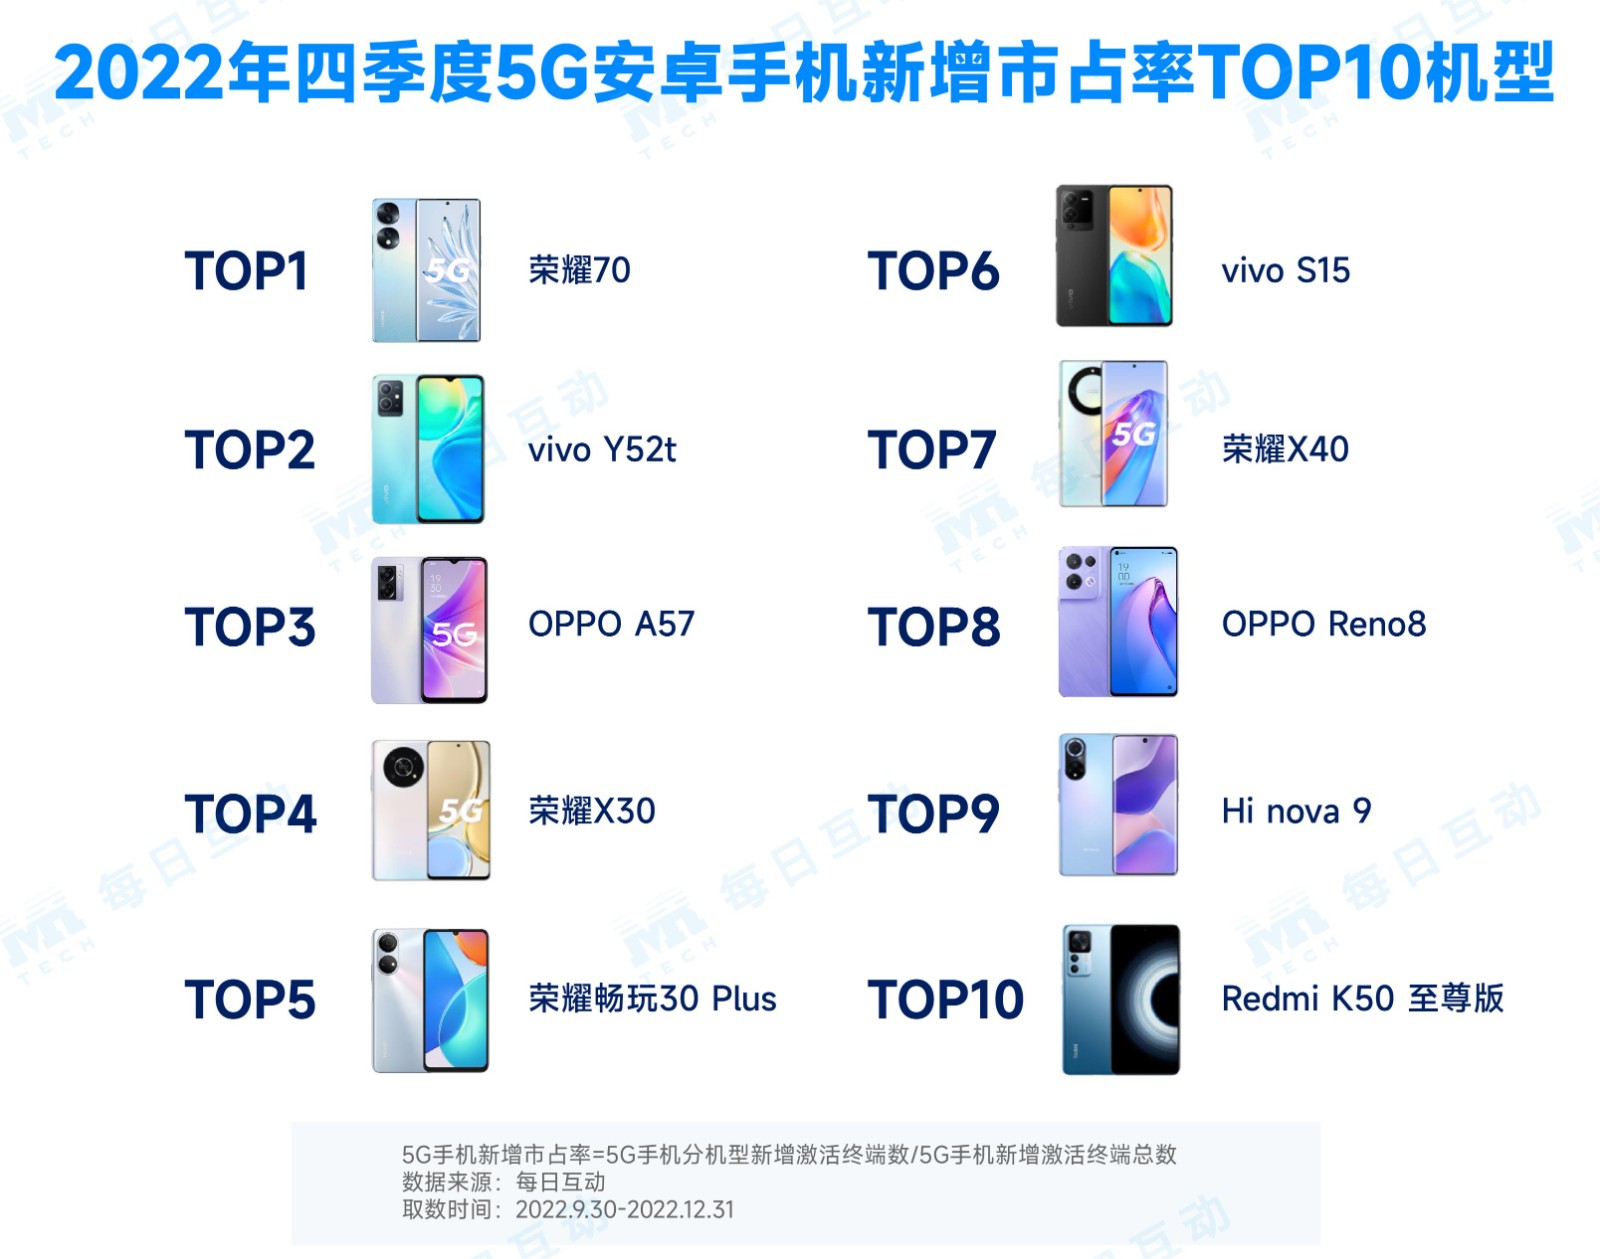 5-2022年4季度安卓5G手机分机型新增市占率TOP10.jpg